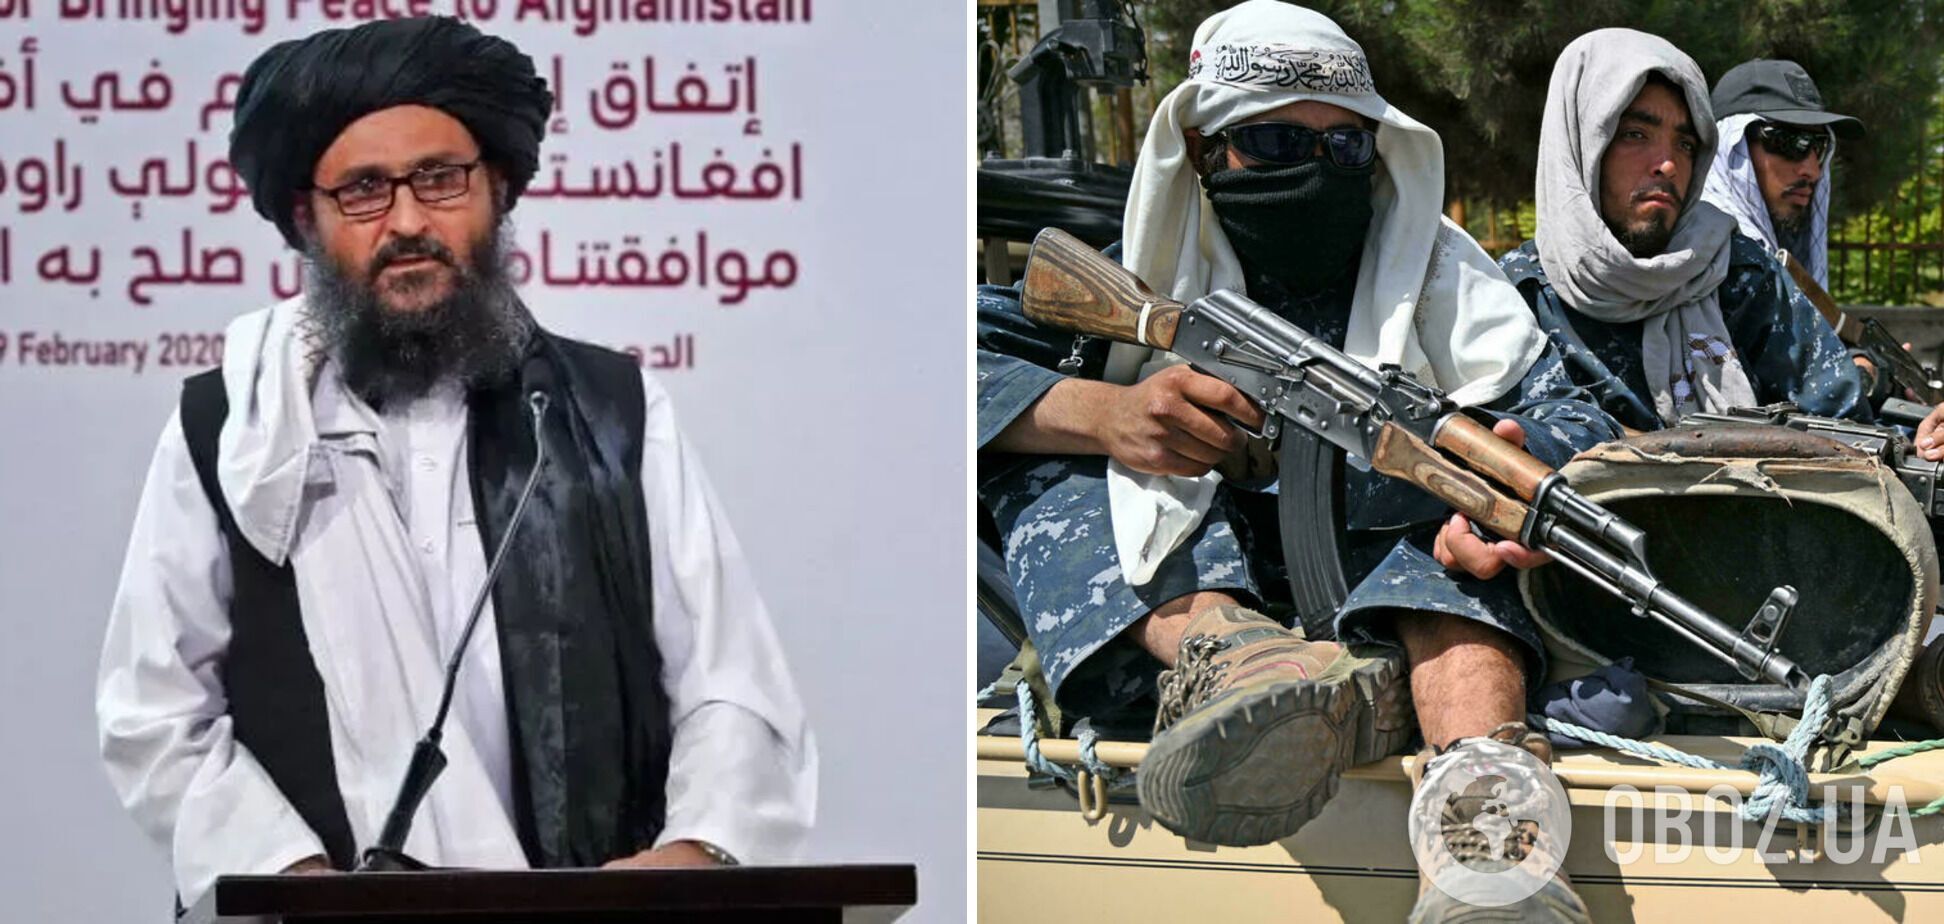 Мулла Барадар – глава политофиса движения "Талибан" в Катаре